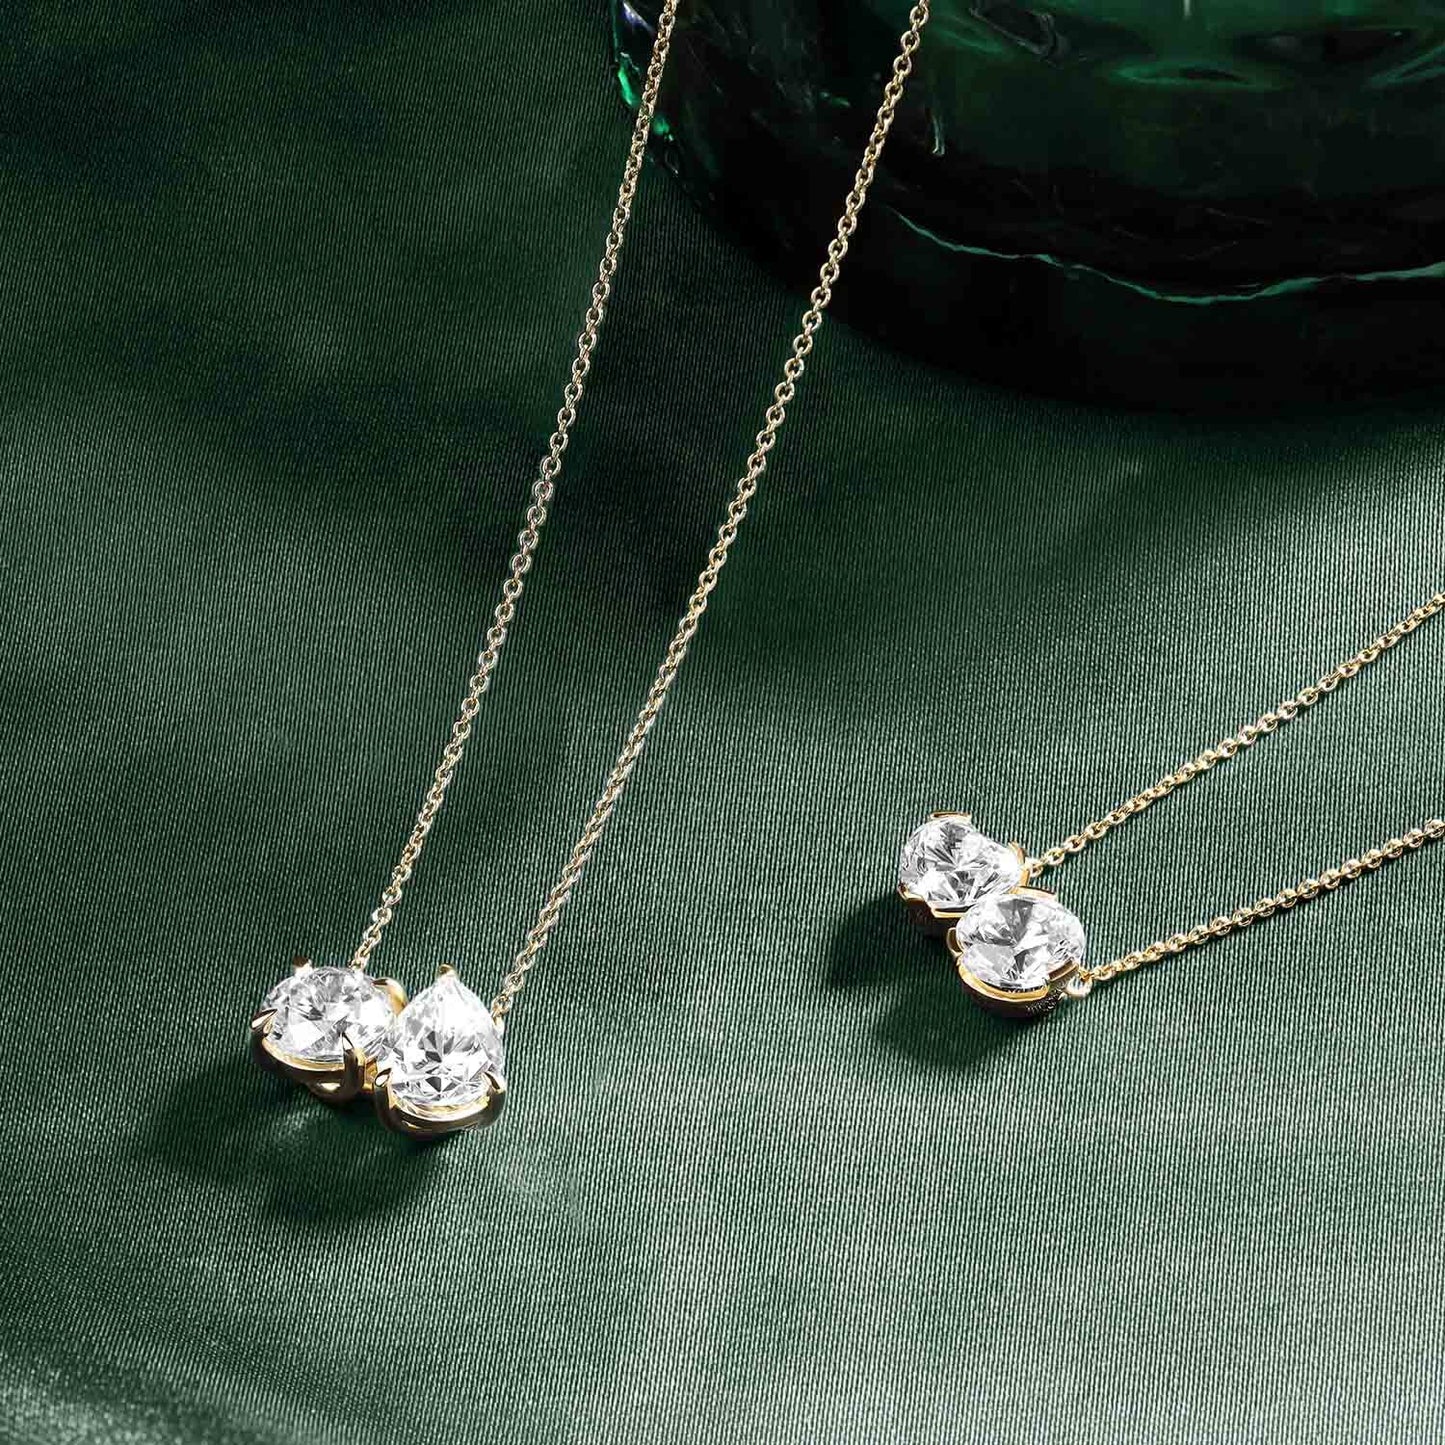 Atmos Heart Round Diamond Two-Stone Necklace